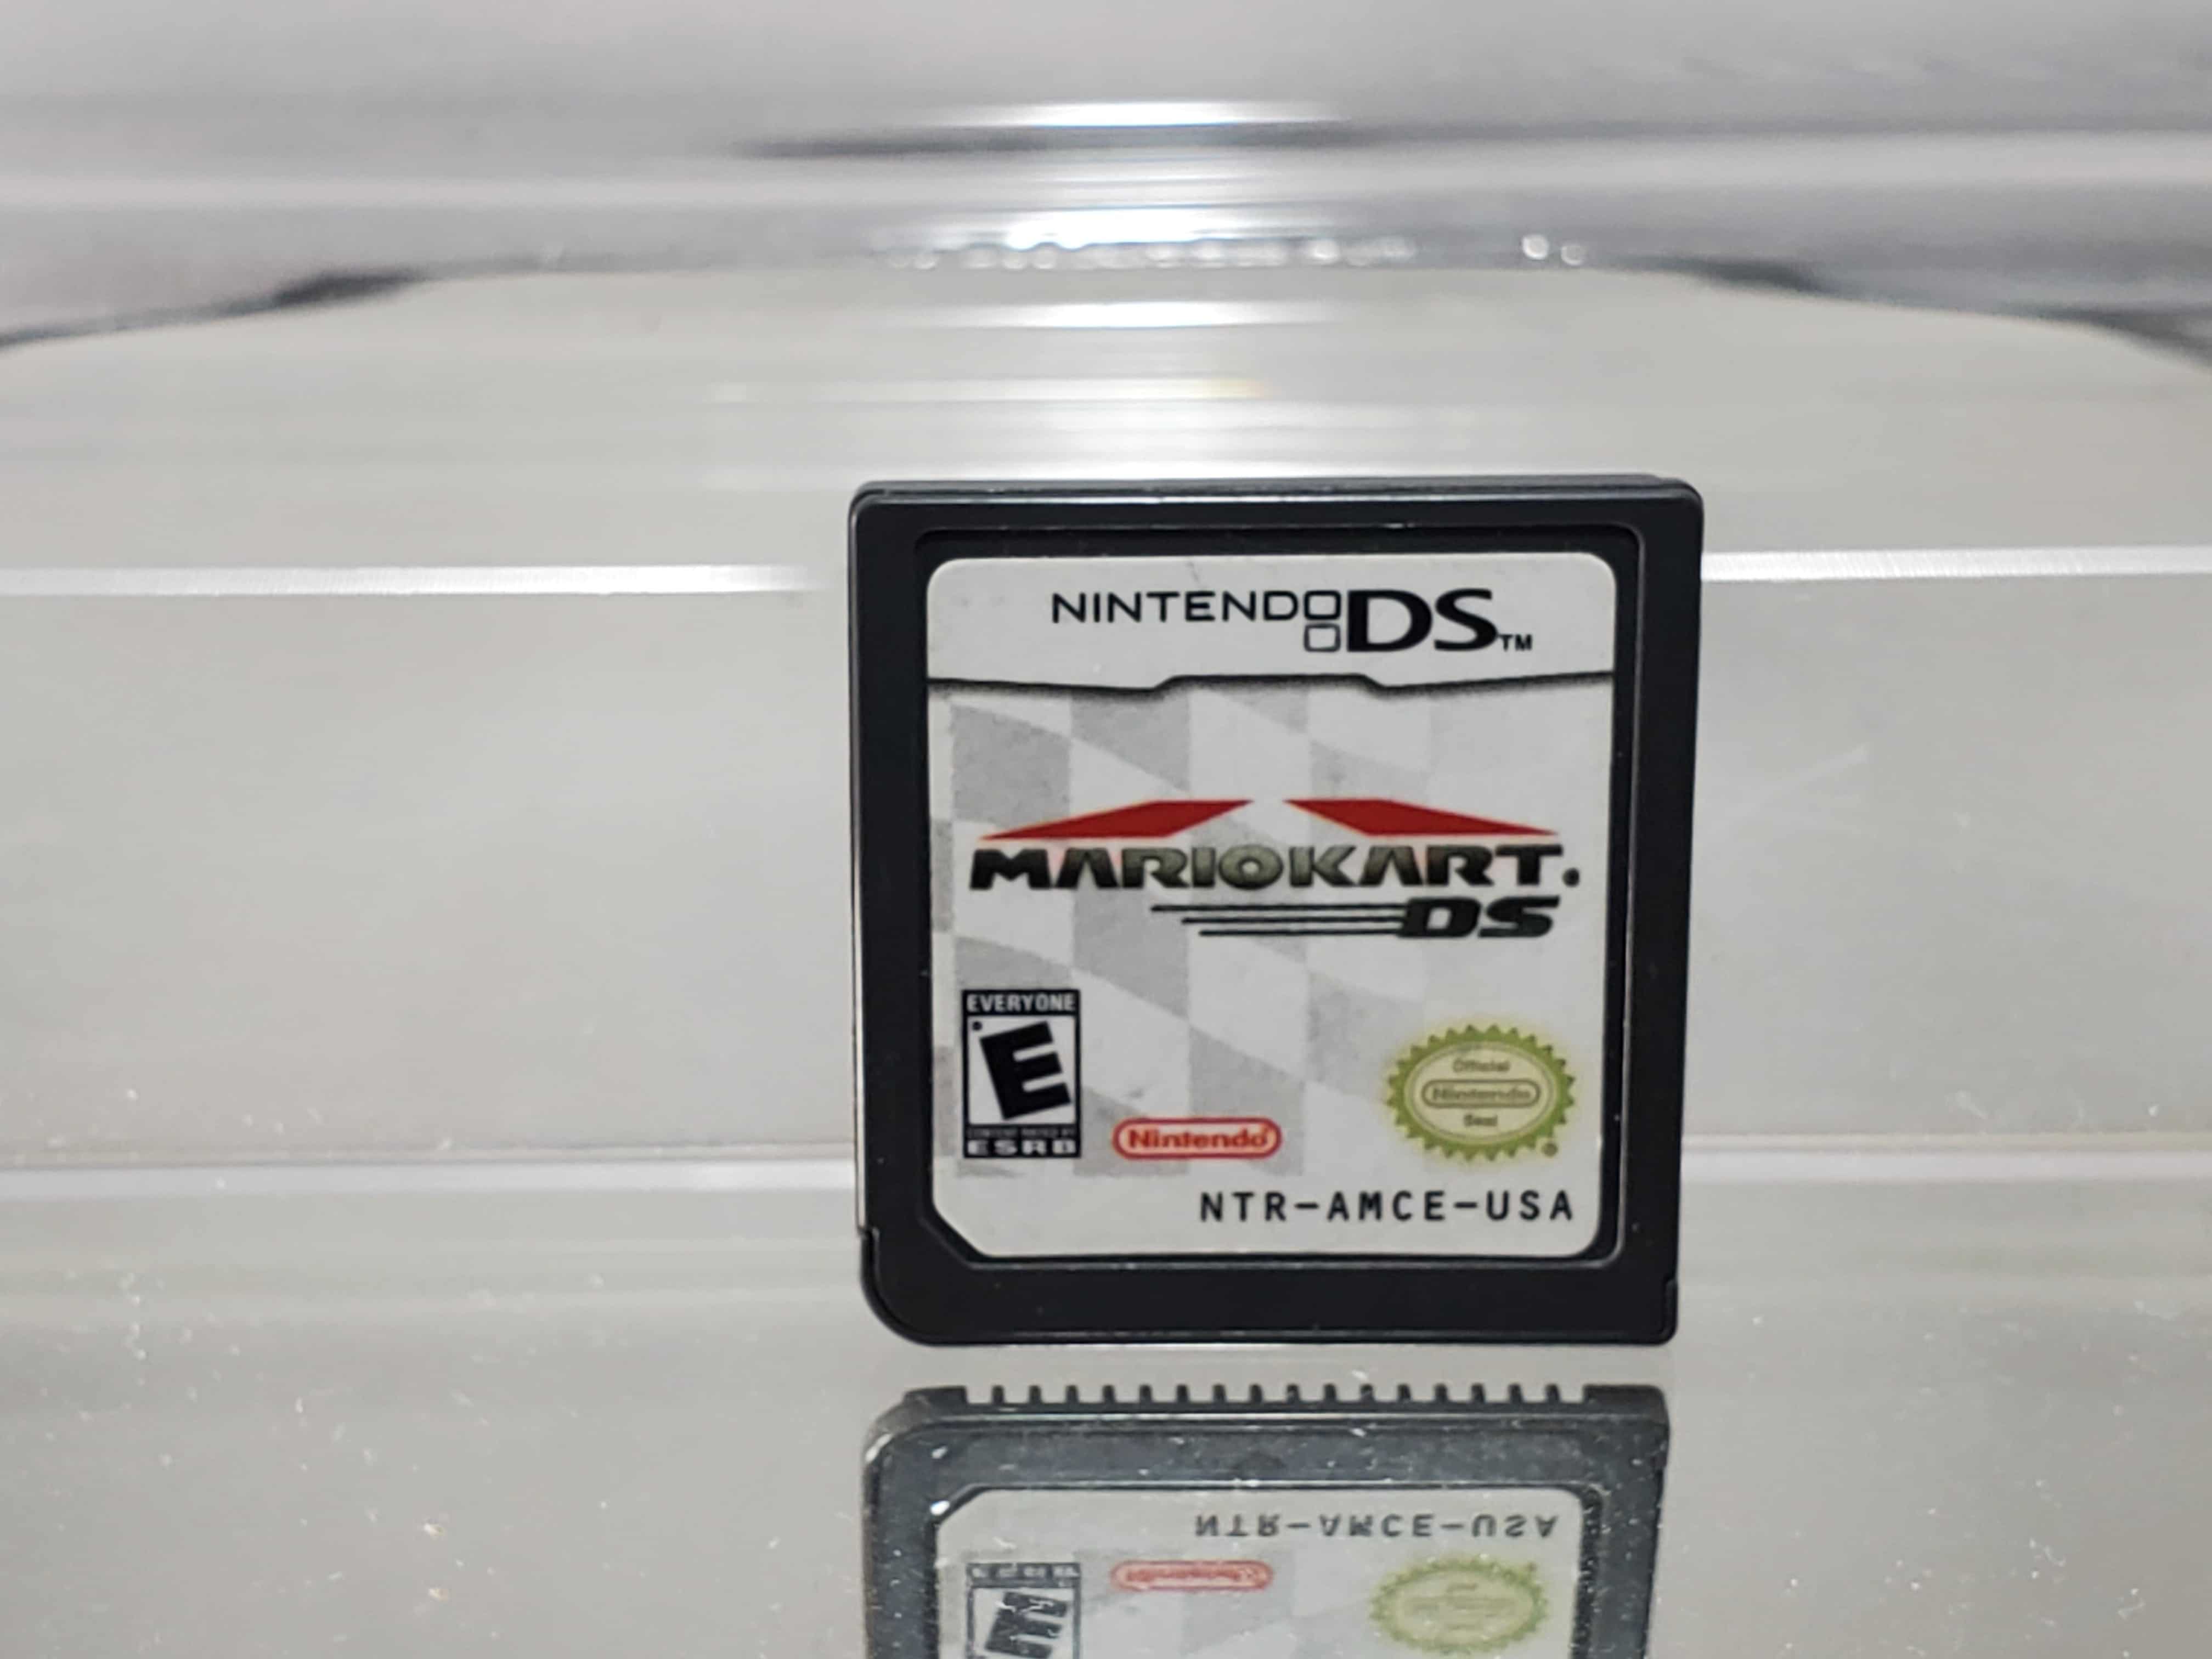 Nintendo DS Mario Kart DS - Geek-Is-Us